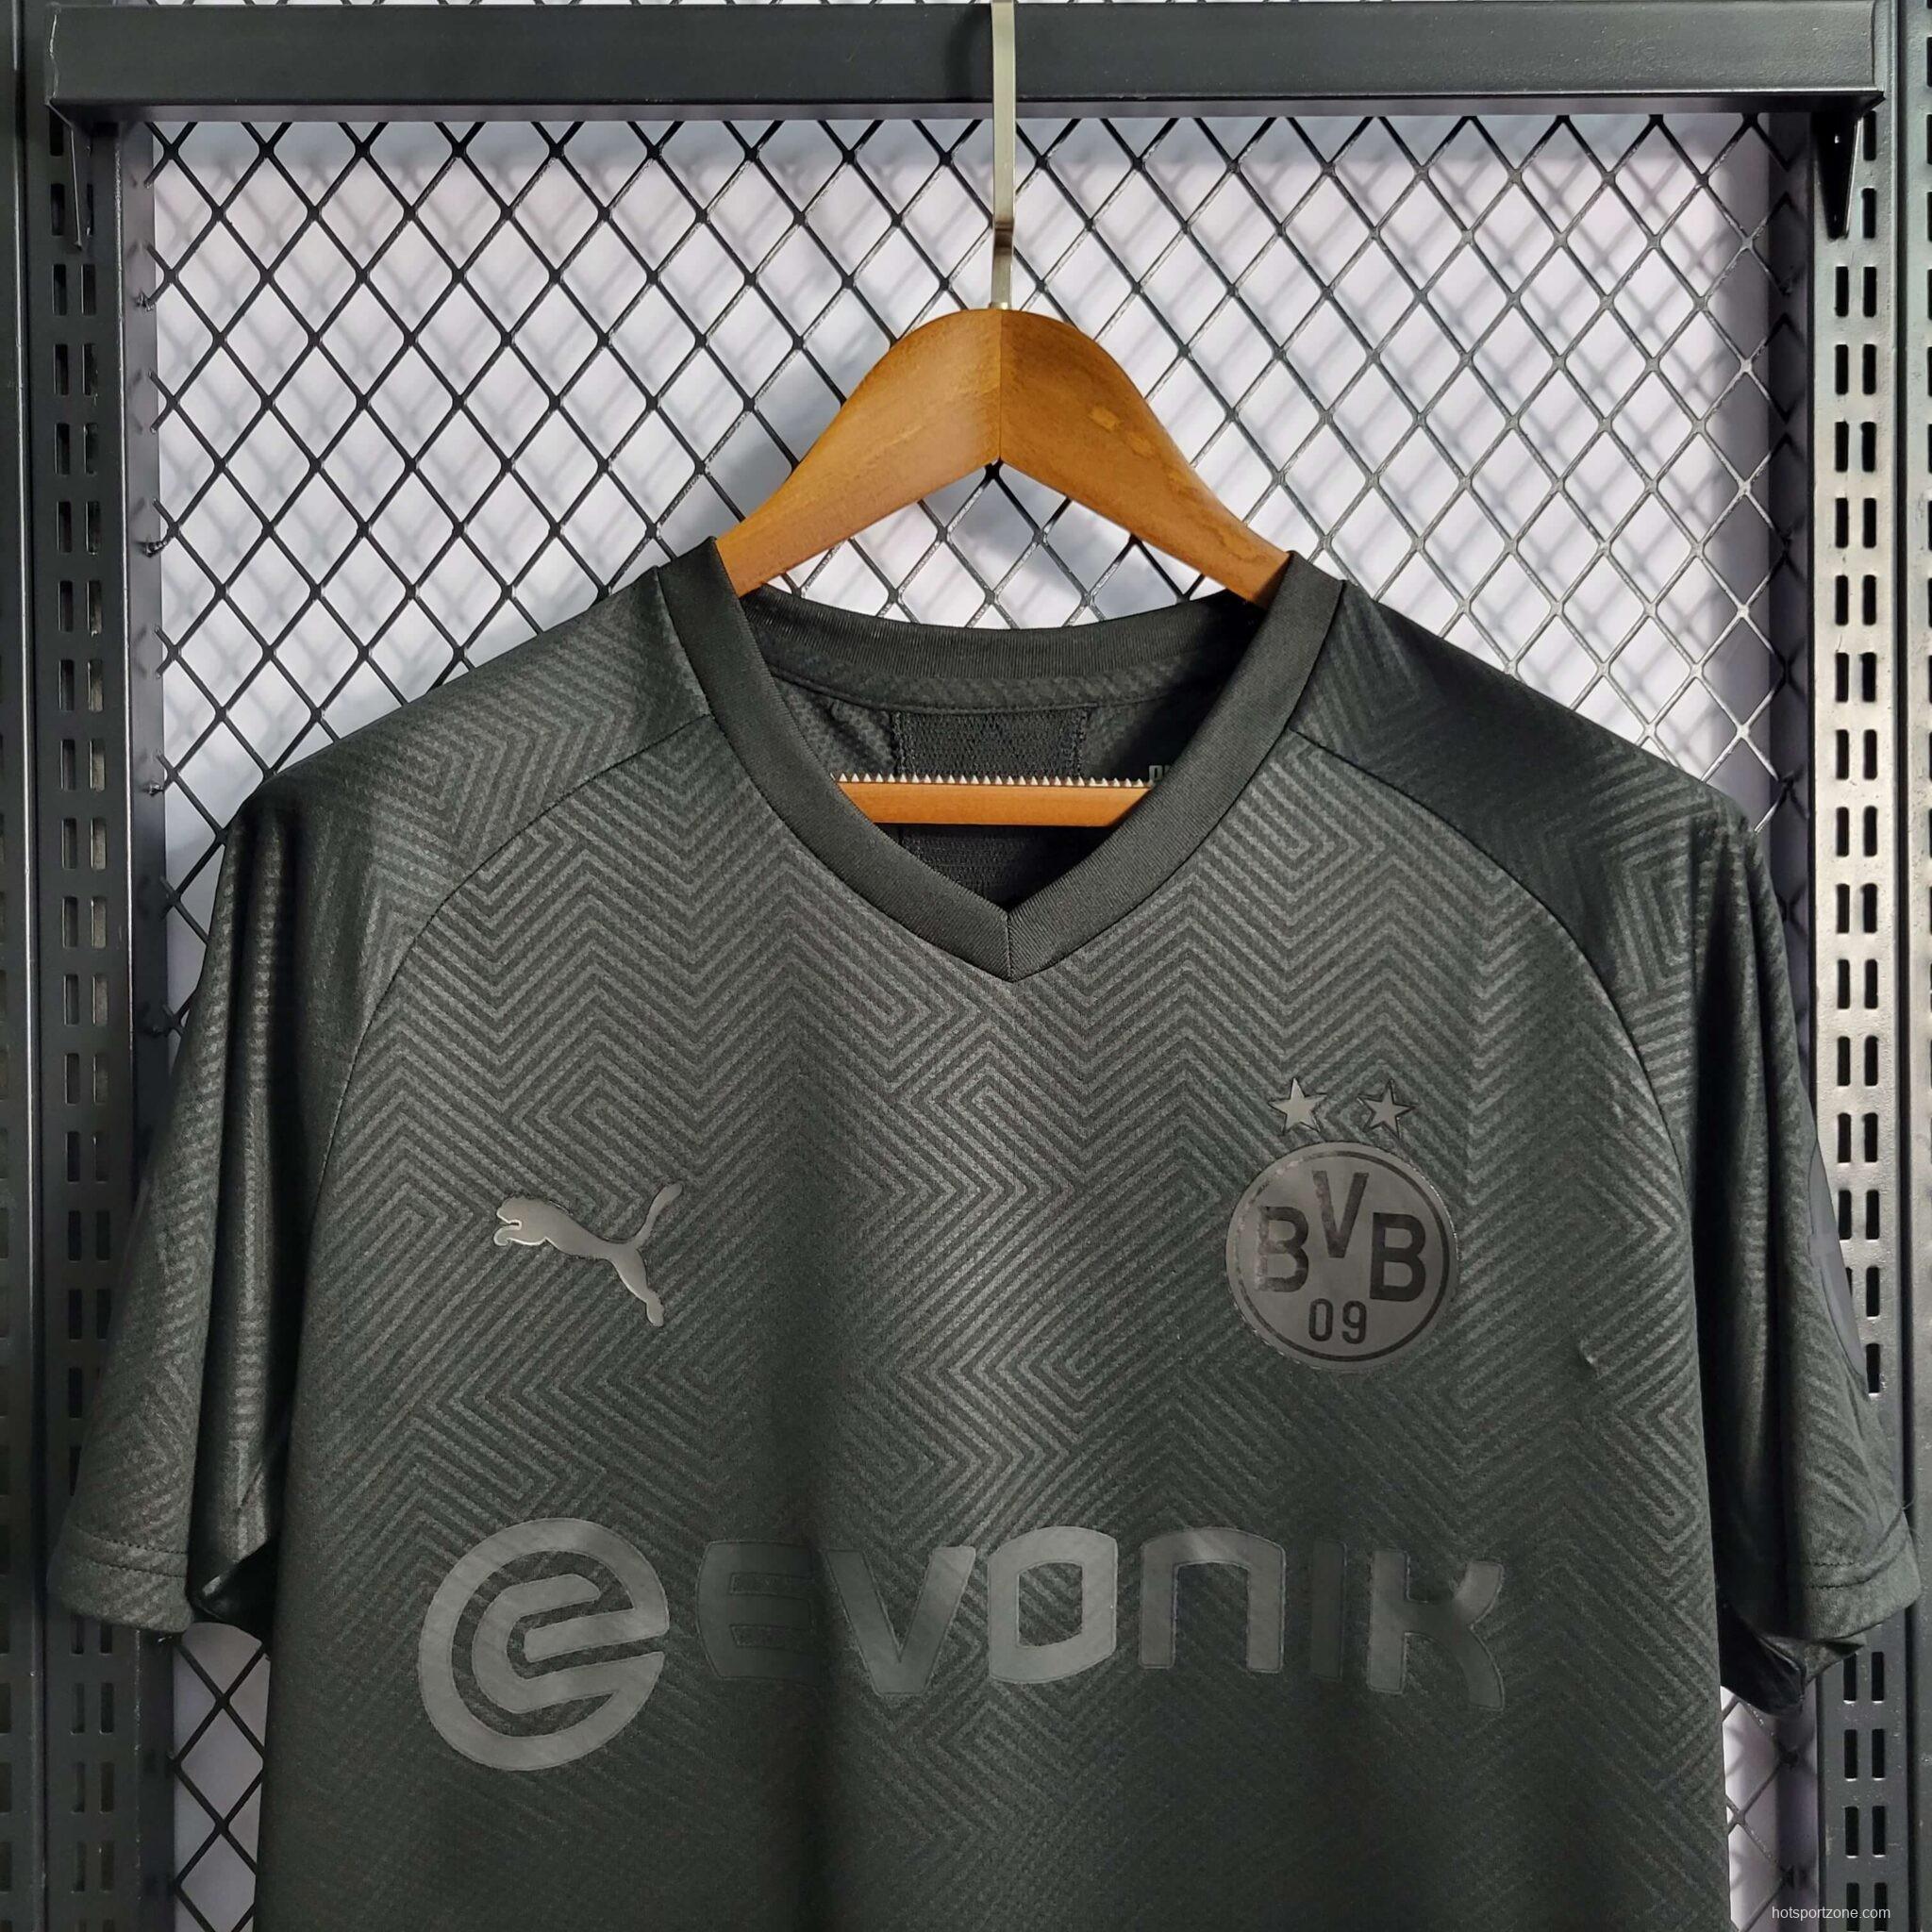 Retro Borussia Dortmund 110th Anniversary Edition Black Jersey